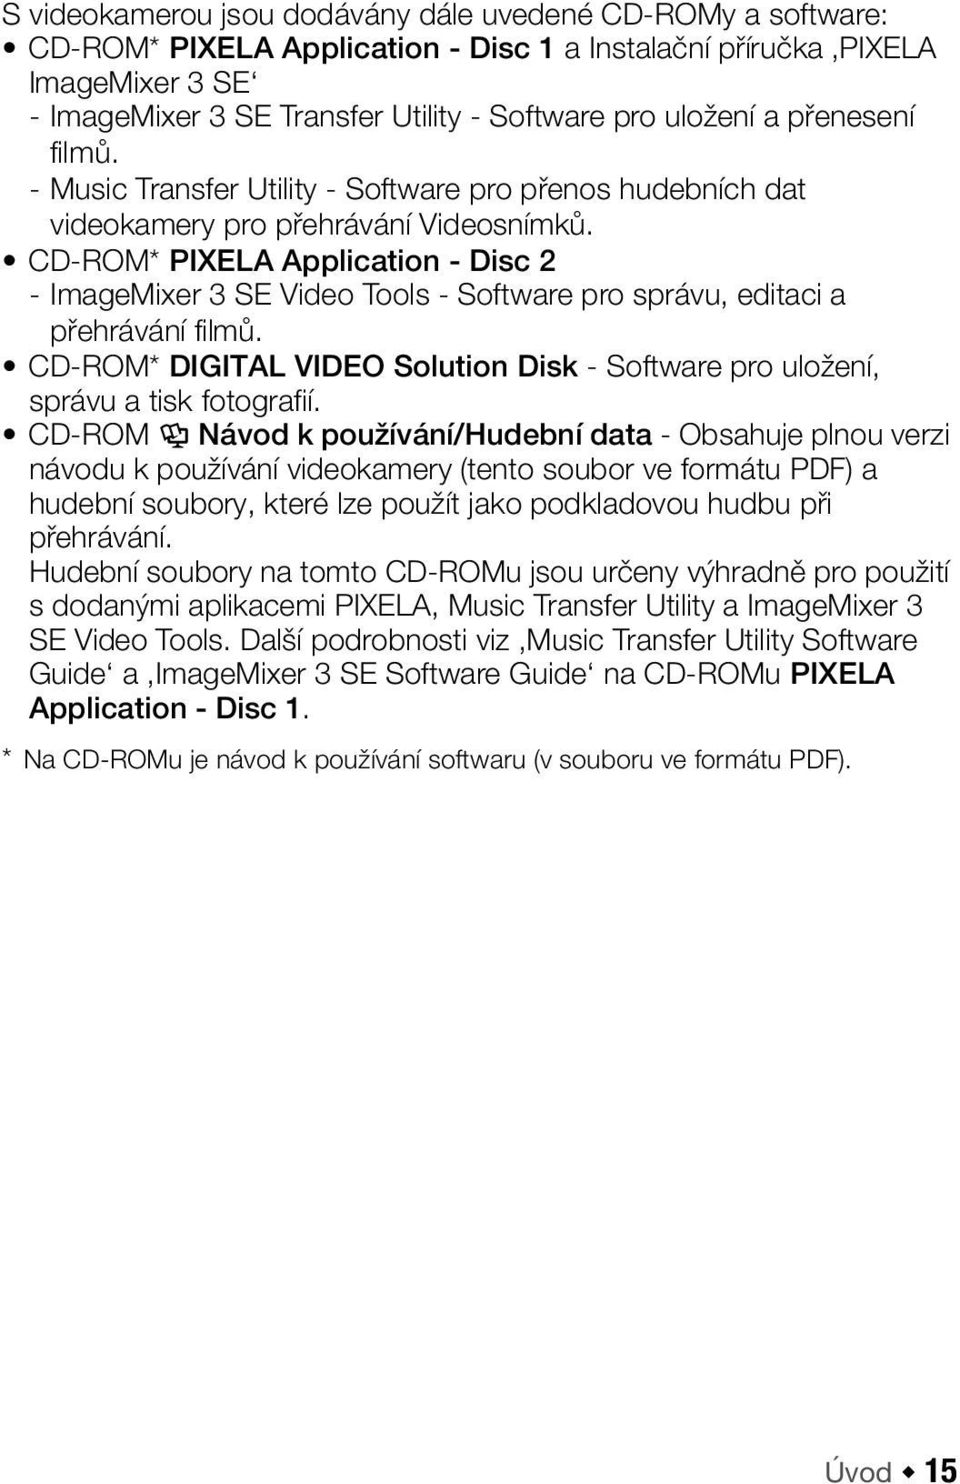 CD-ROM* PIXELA Application - Disc 2 - ImageMixer 3 SE Video Tools - Software pro správu, editaci a přehrávání filmů.